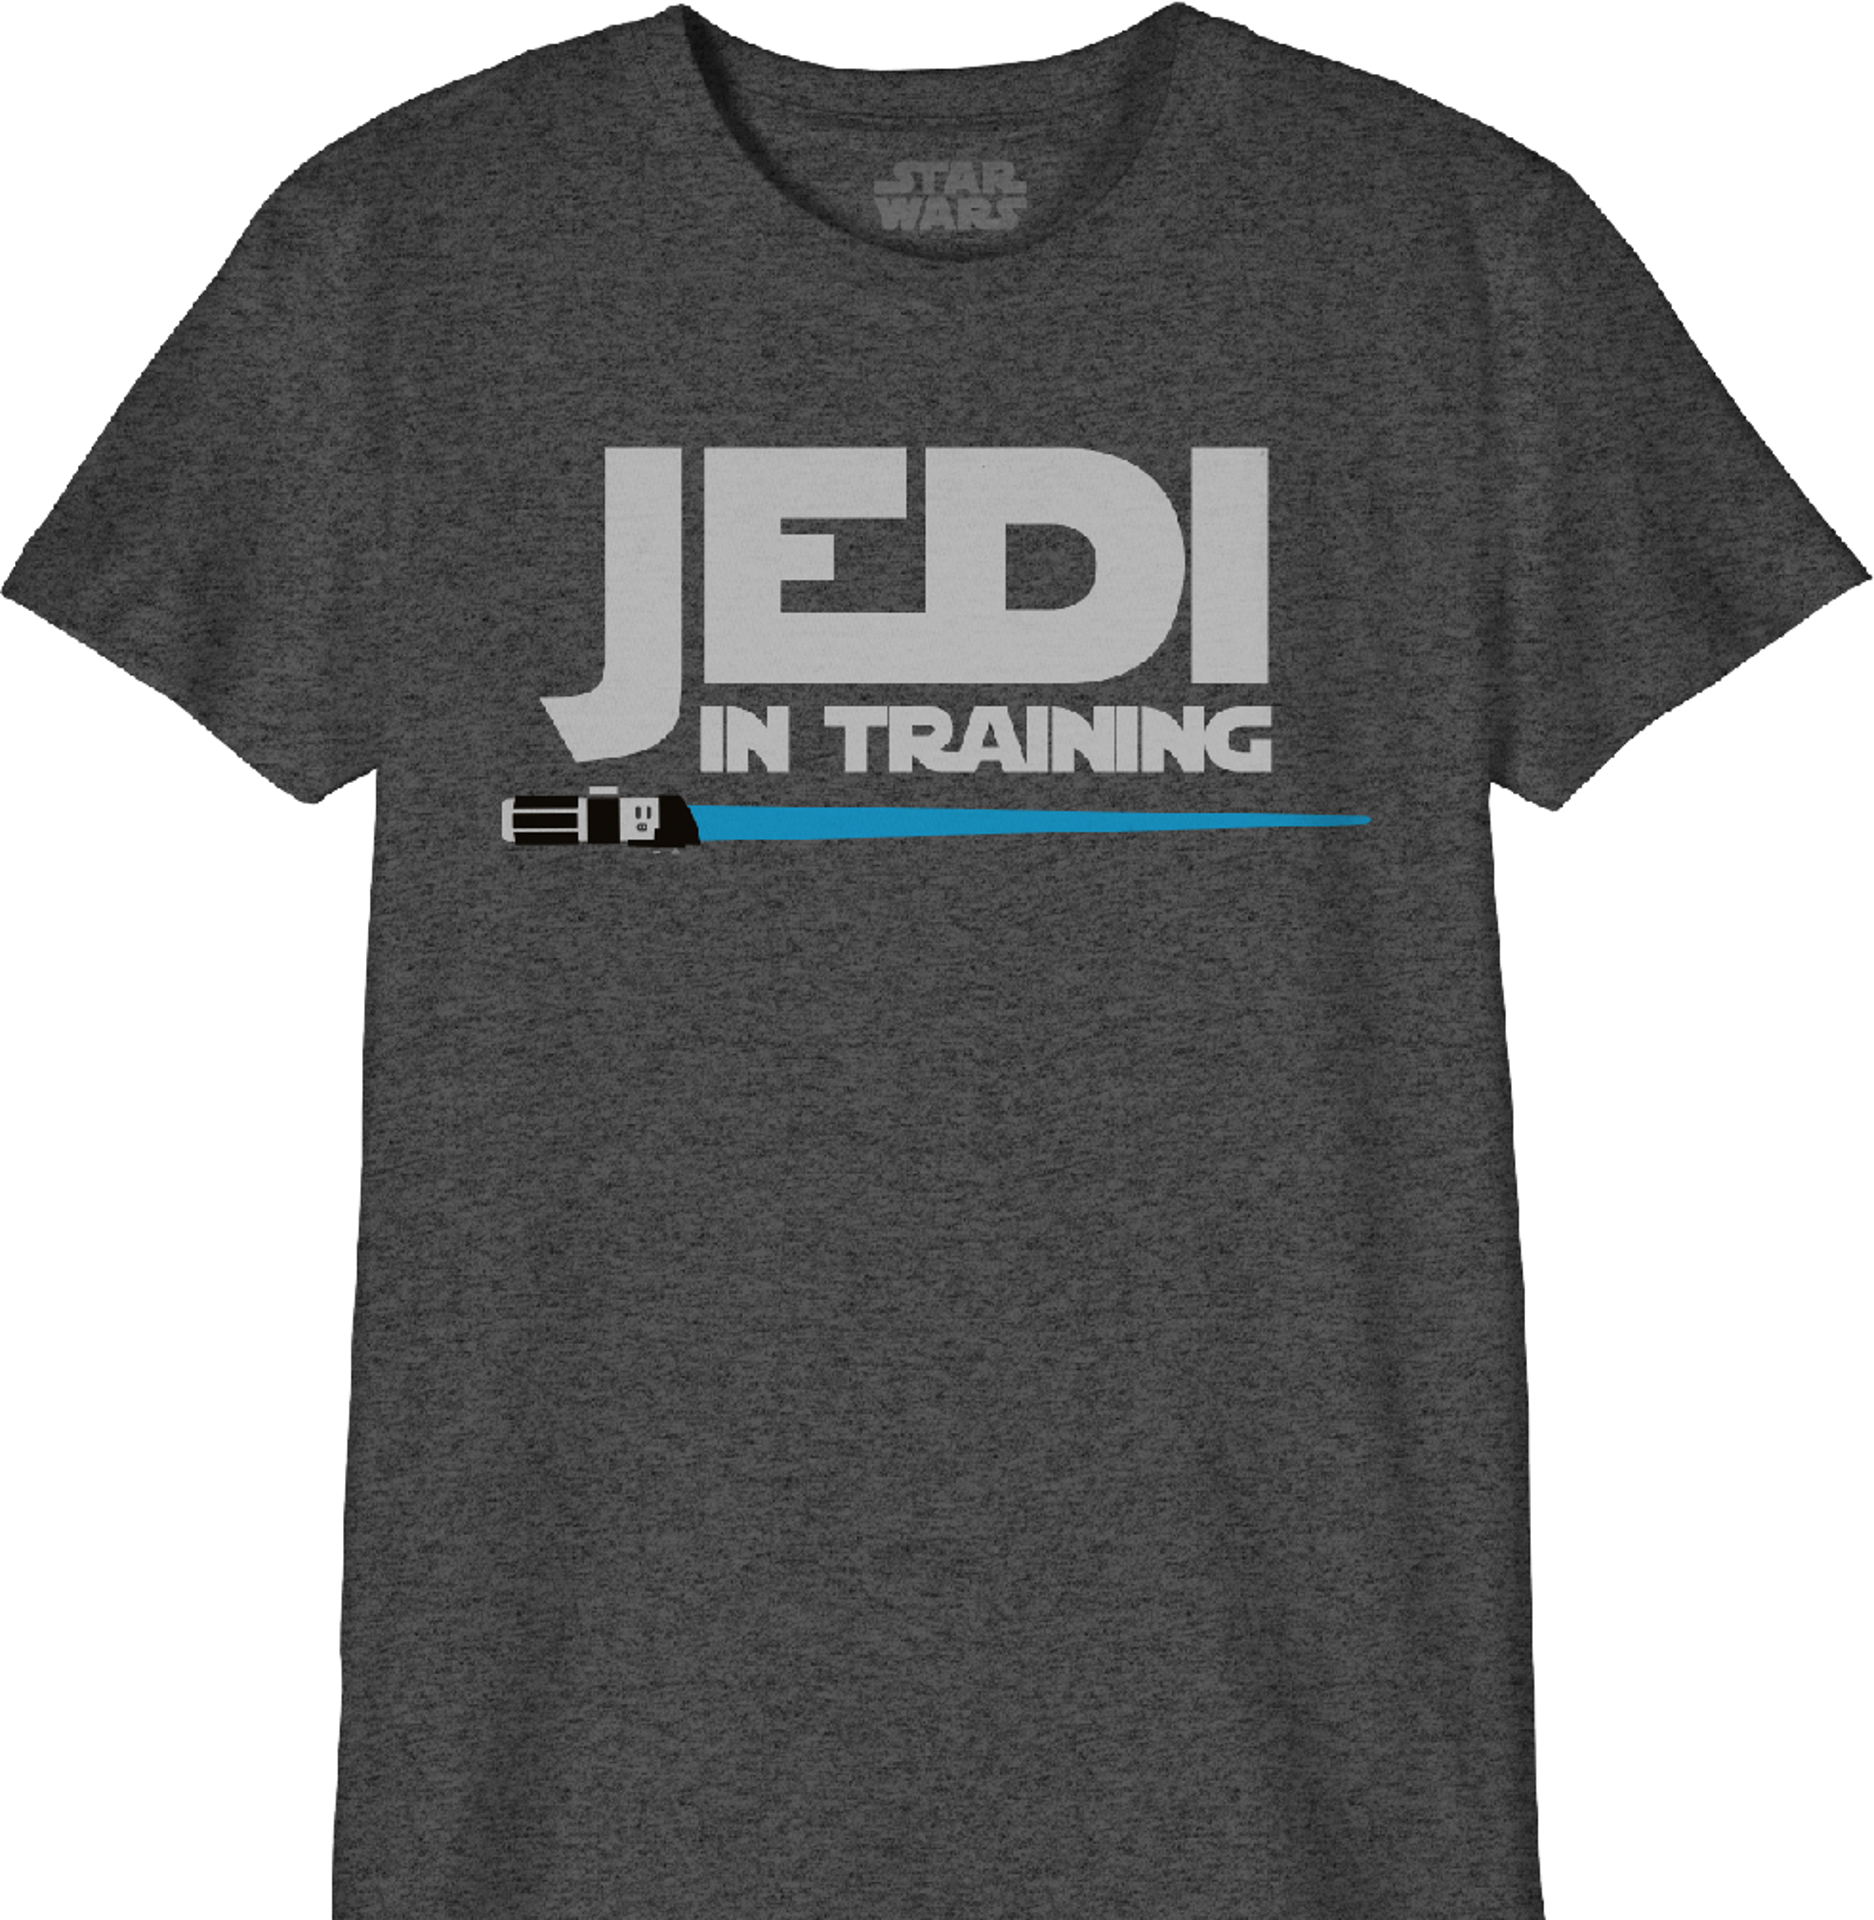 Star Wars - T-Shirt Noir Enfant Jedi en formation - 6 ans